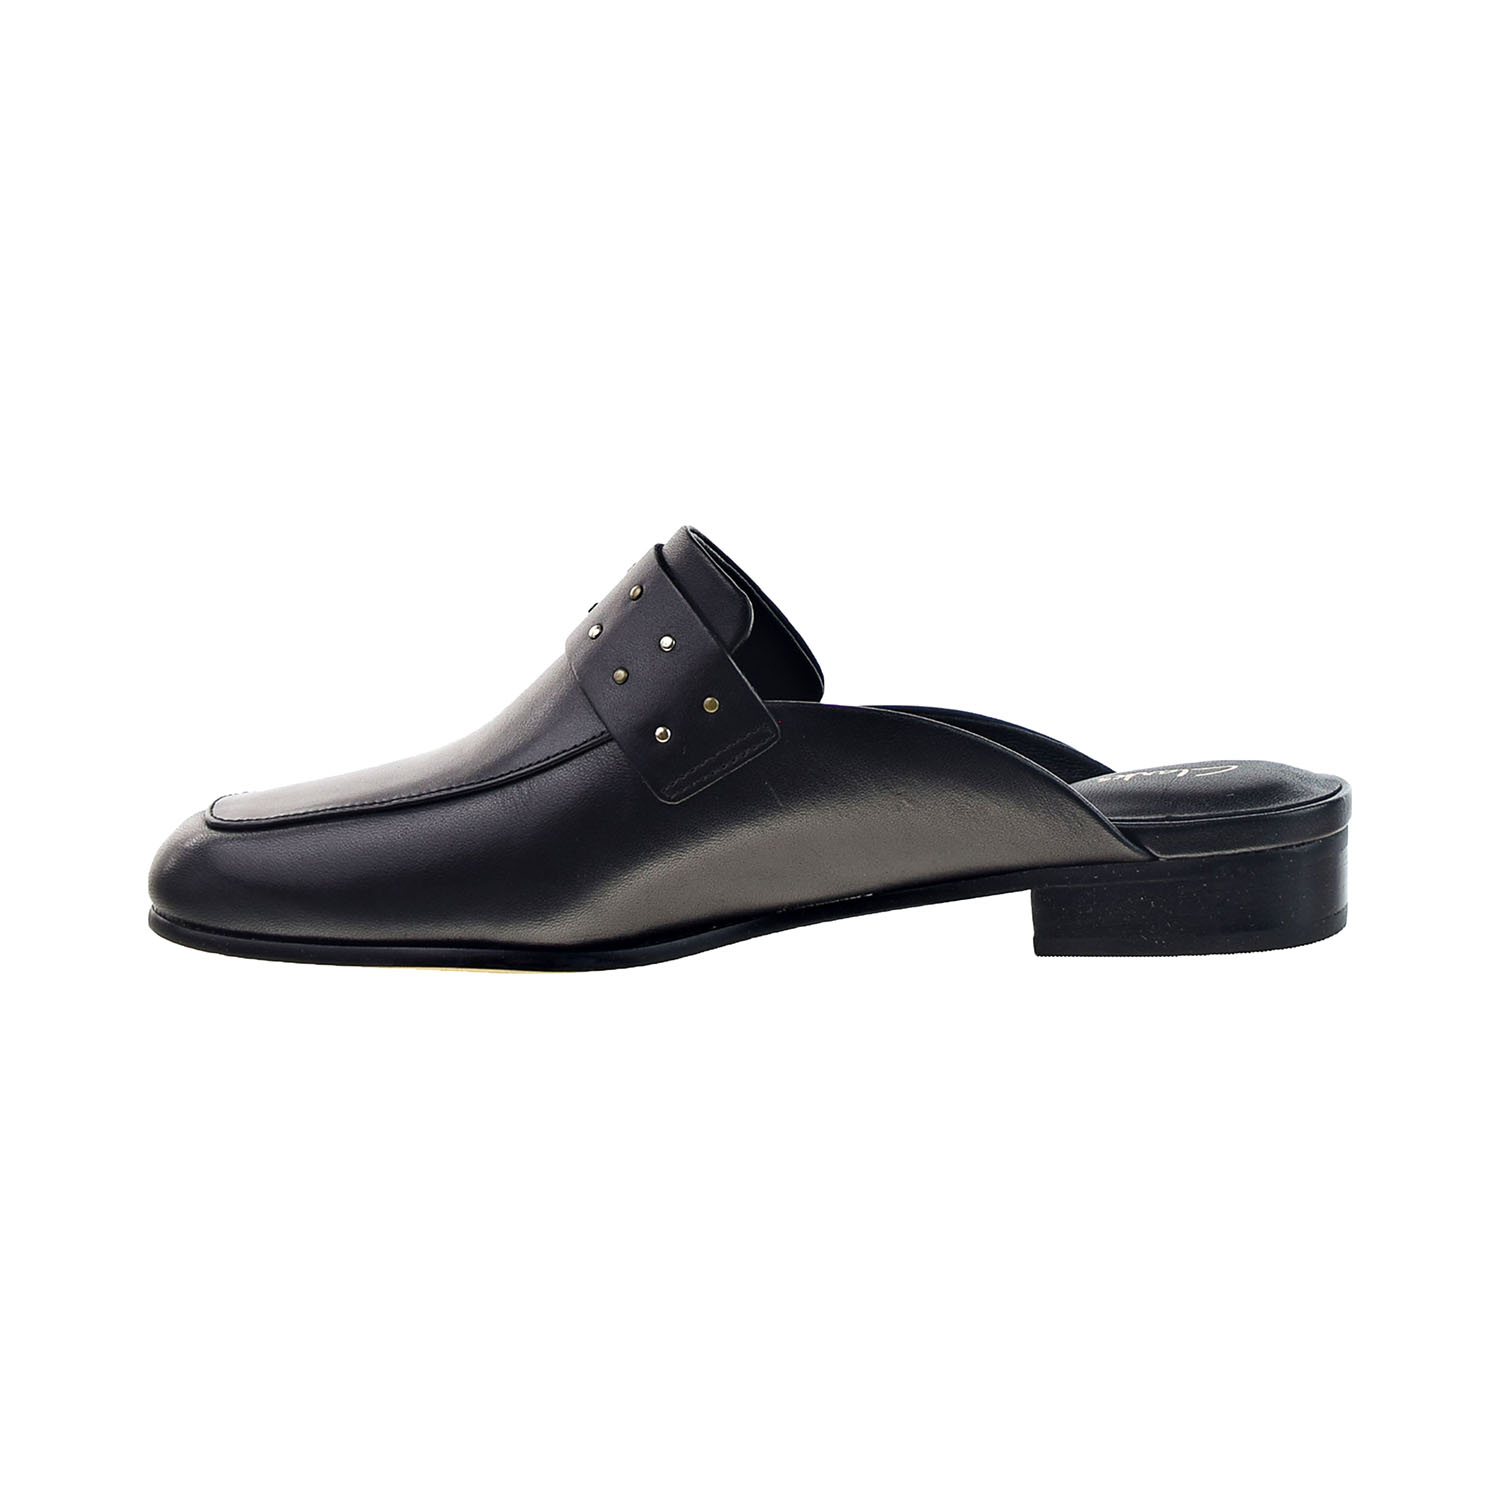 Clarks Pure Mule Women's Slip-on Dress Shoes Black Leather 26150382 | eBay